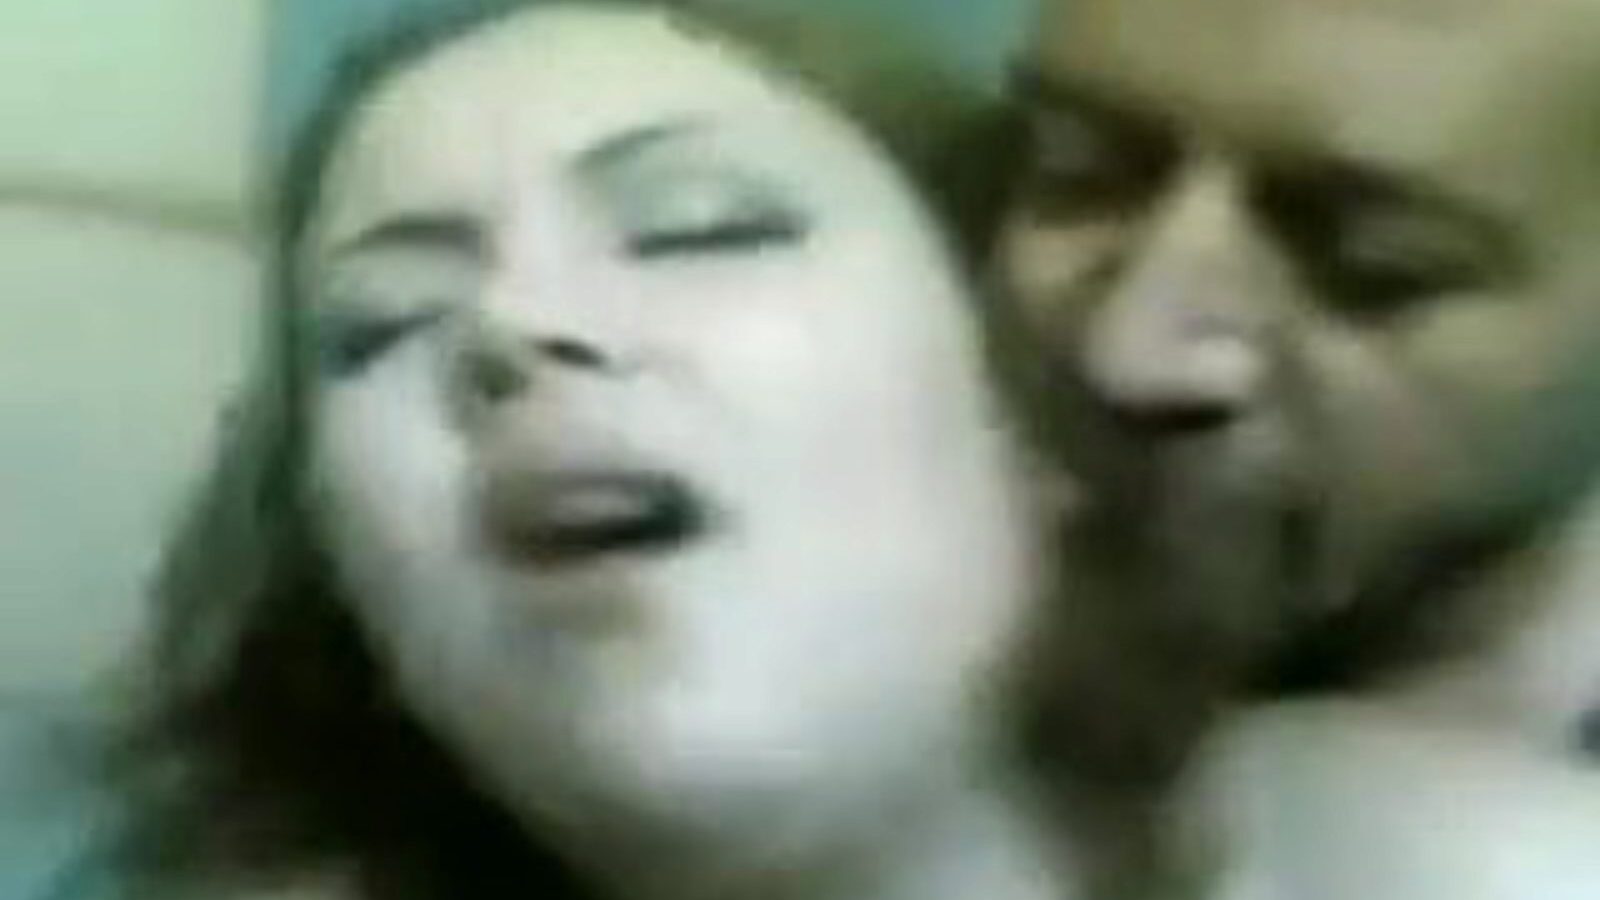 madame lily: besplatni šezdeset i devet porno video 07 - xhamster gledajte madame lily tube isječak za vođenje ljubavi besplatno na svima na xhamsteru, uz vrhunsku količinu egipatskih arapskih, 69 i velikih porno porno epizoda